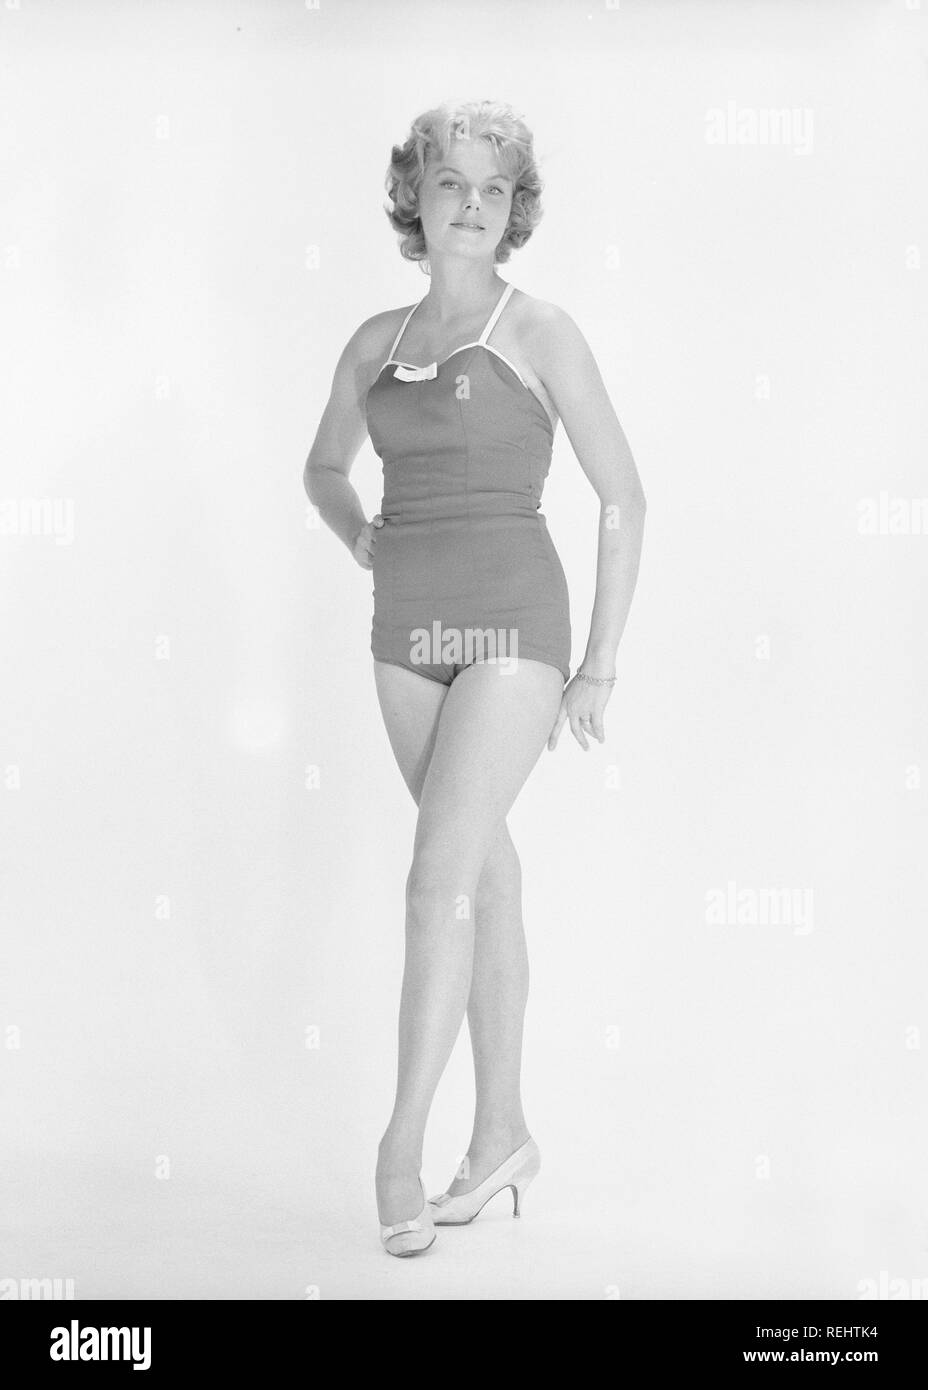 1960 Bikini Mode Ein Blondes Madchen In Einem Fotografen Studio In Einem Typischen 60er Badeanzug Schweden Der 60er Jahre Foto Kristoffersson Ref Cp 27 12 Stockfotografie Alamy